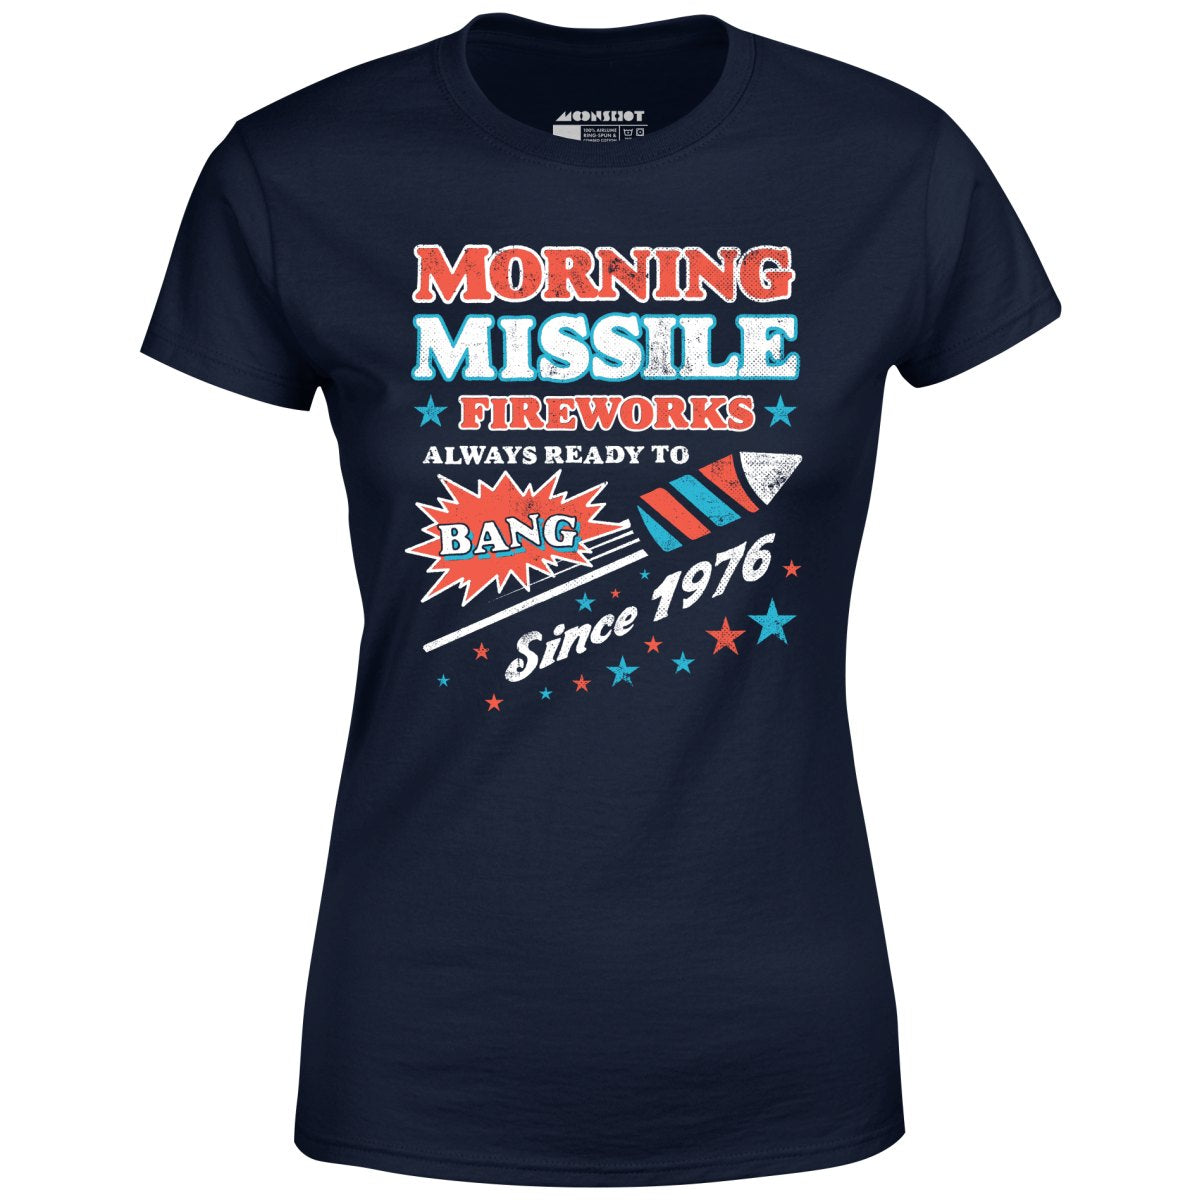 Morning Missile Fireworks - Women's T-Shirt